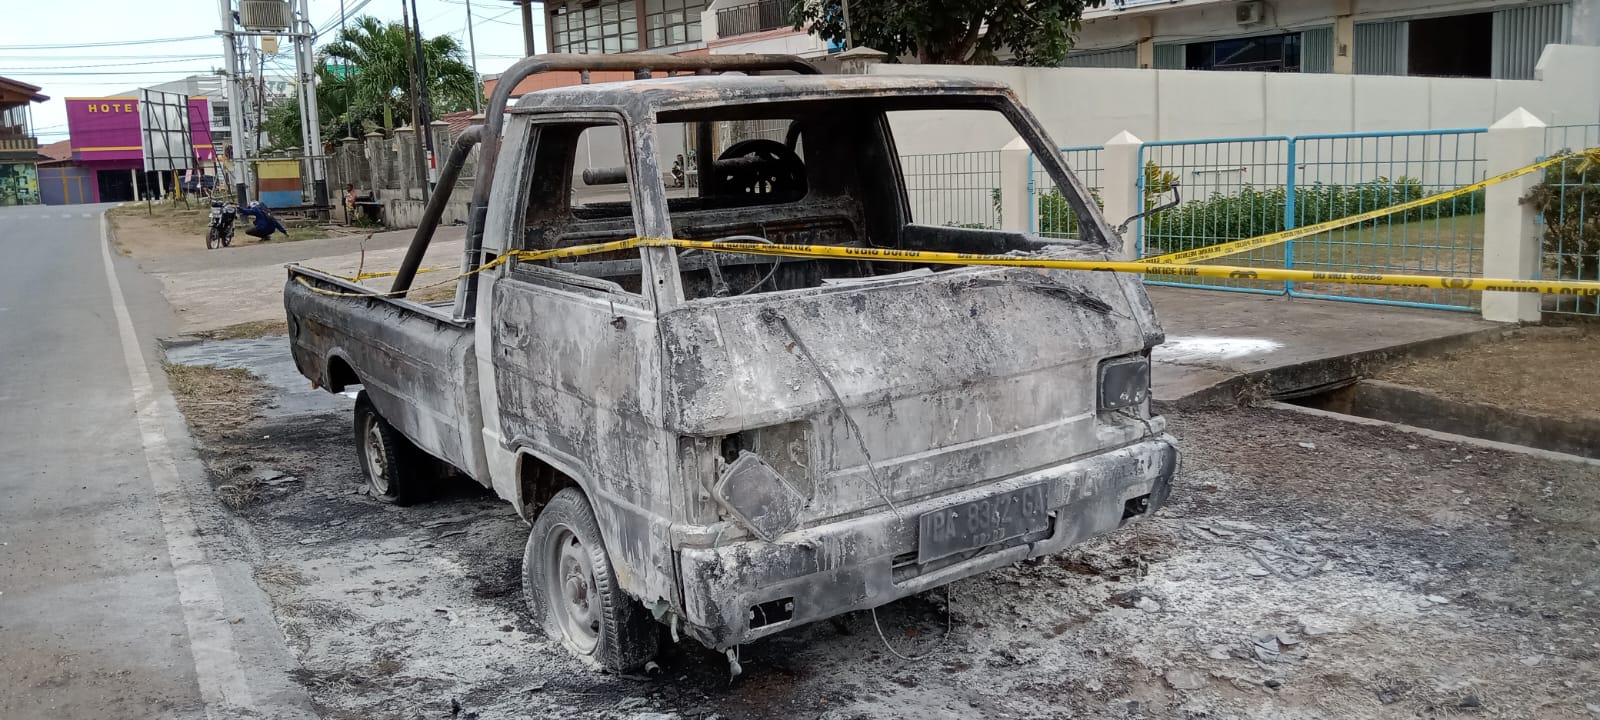 Mobil pikap yang terbakar di Jalan Ahmad Yani – Surya Papua/Yulianus Bwariat